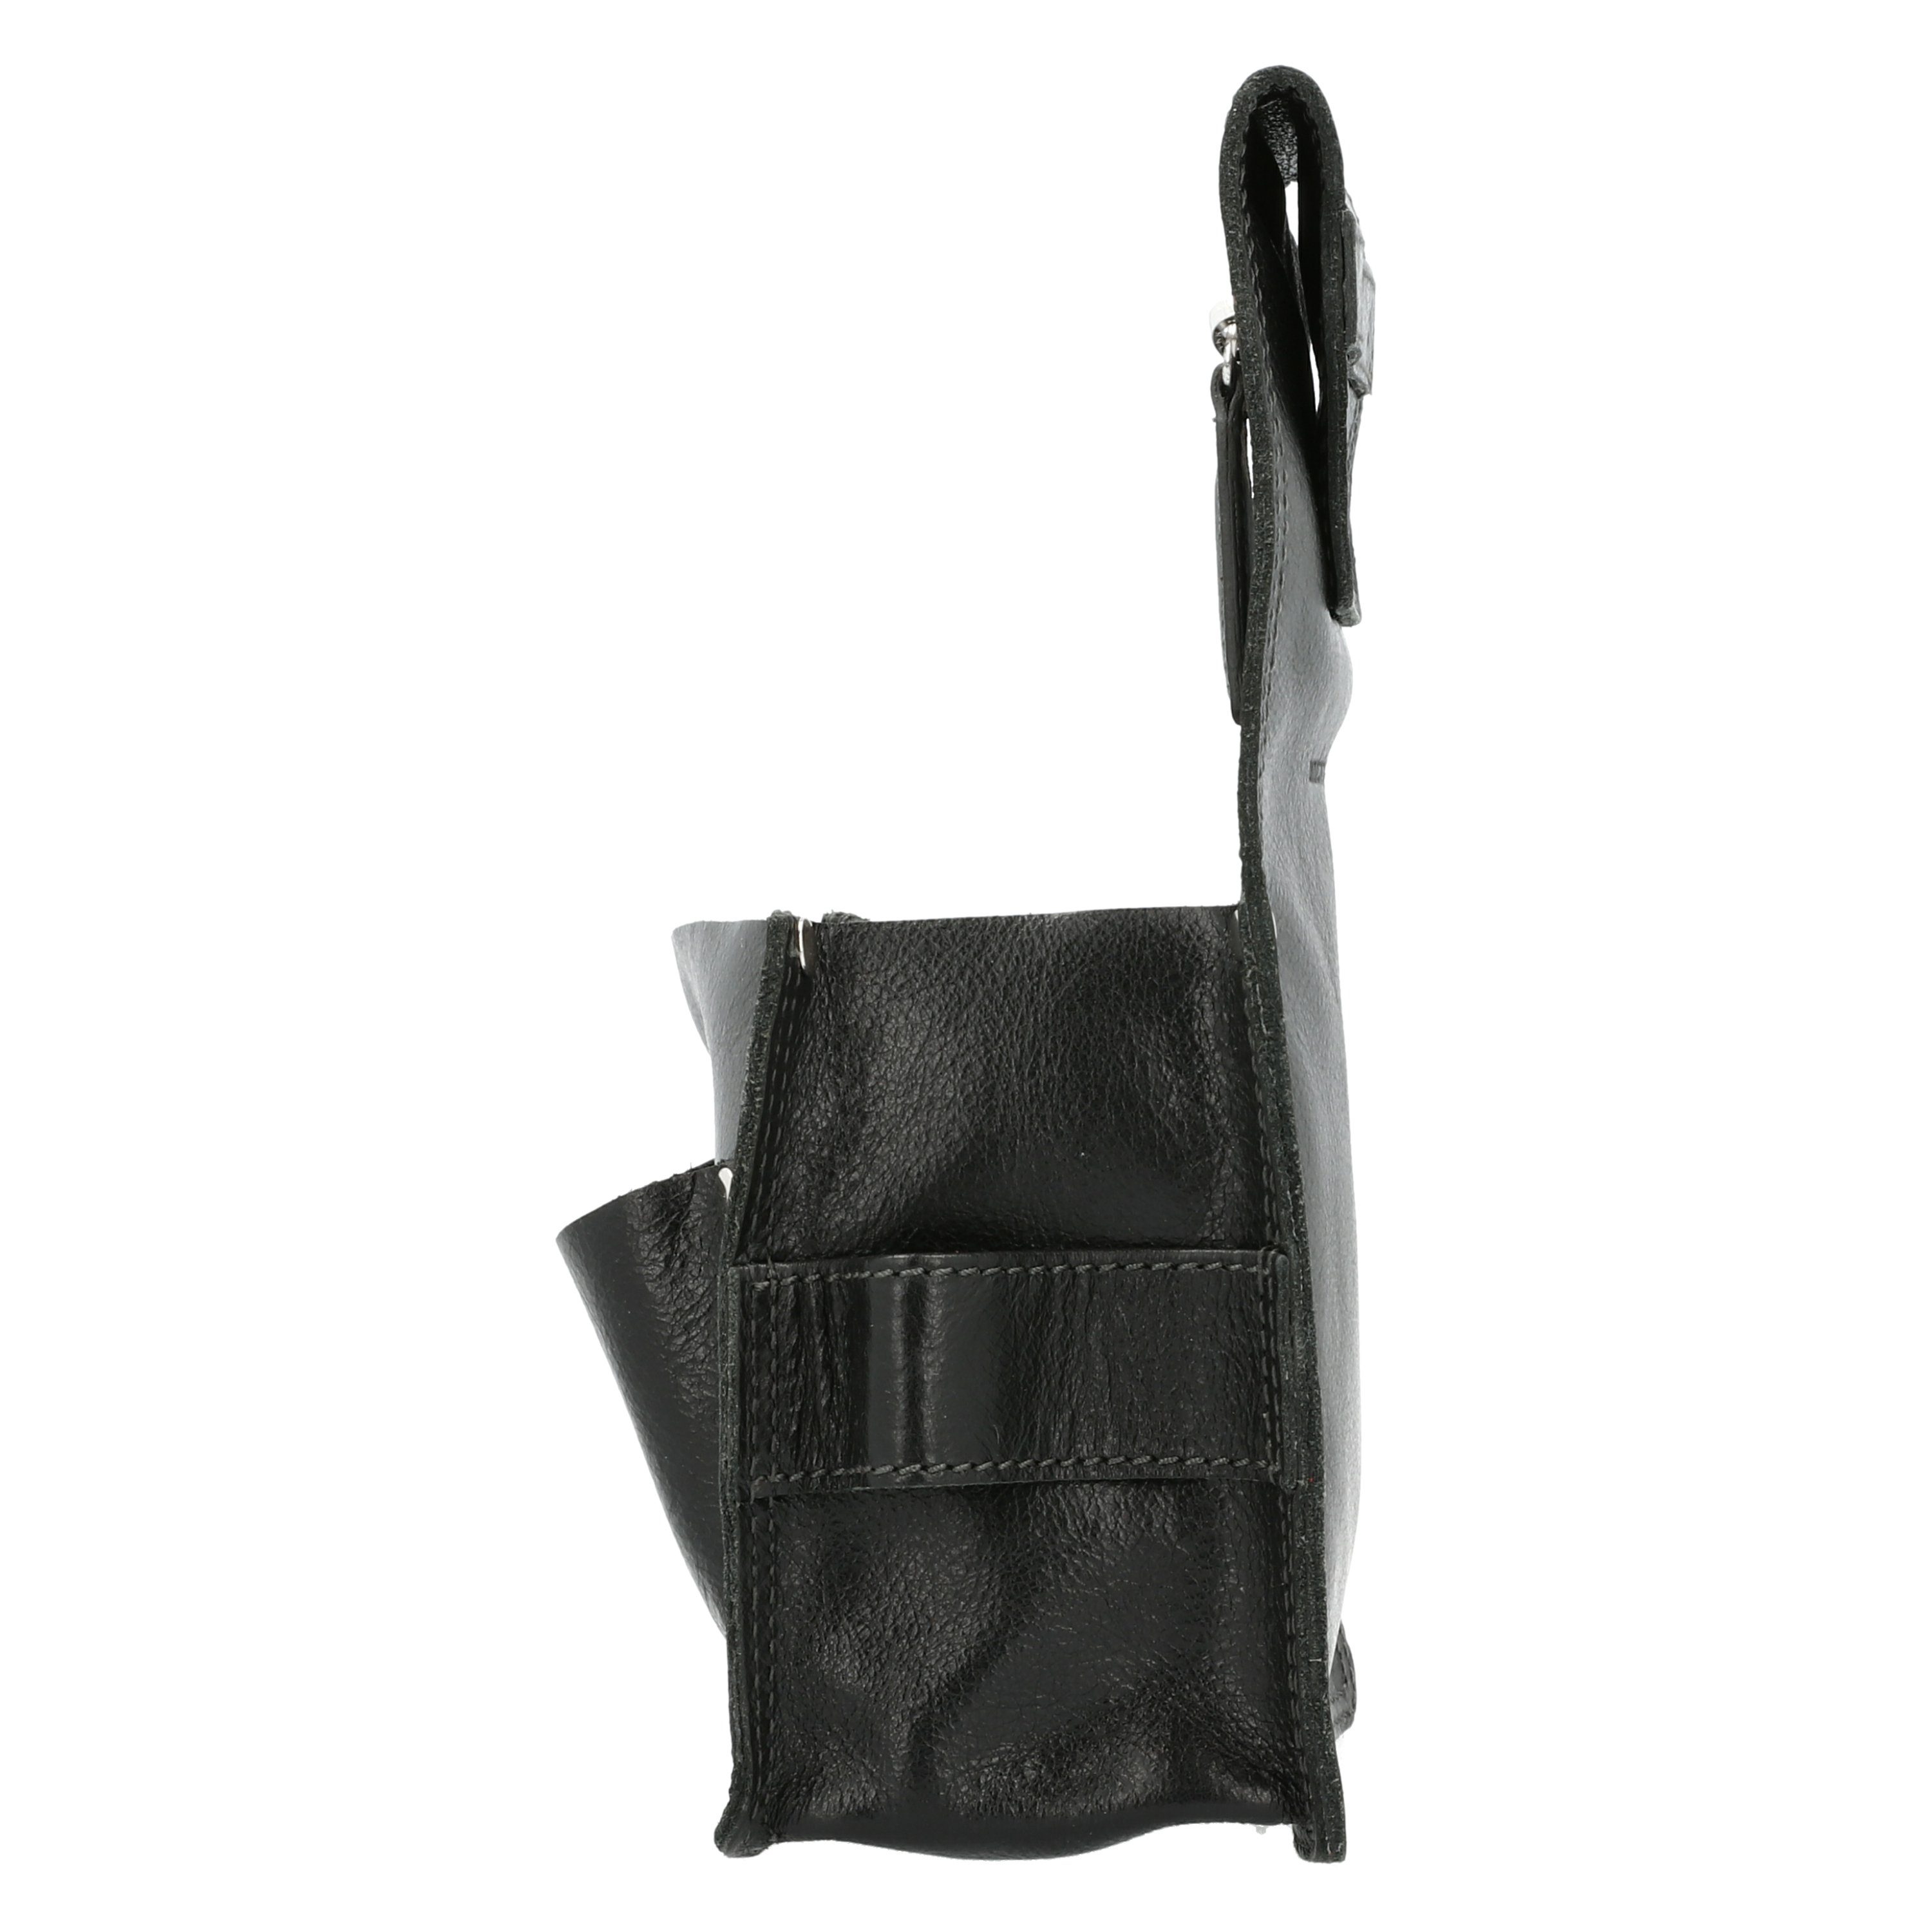 Picard Werkzeugbox PICARD Werkzeuggürtel Tool schwarz aus Echtleder Bag